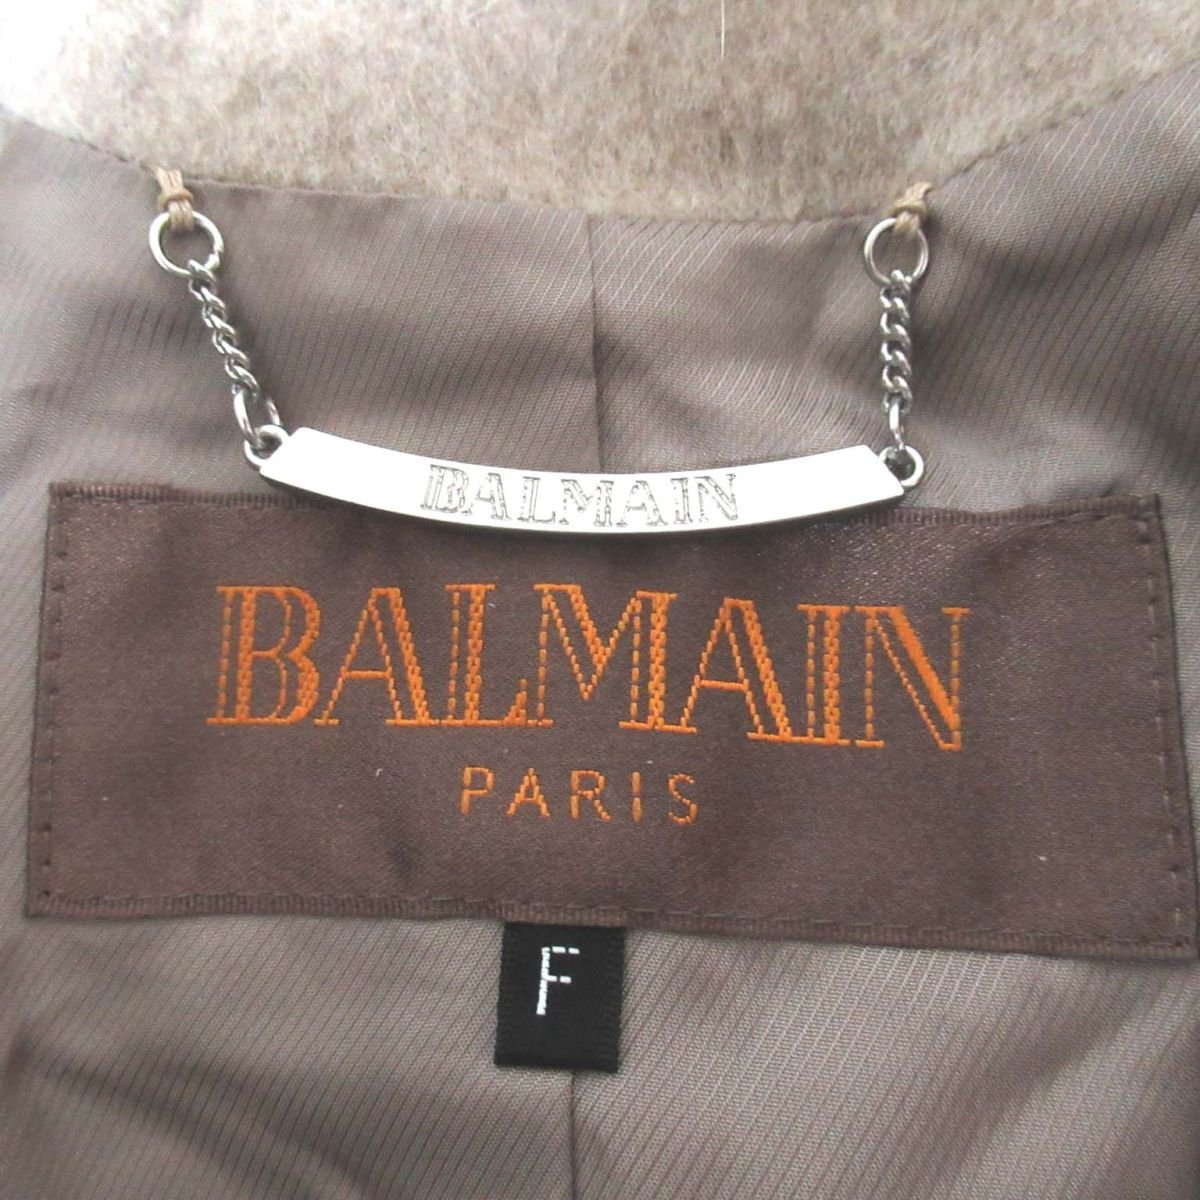  прекрасный товар BALMAIN Balmain мех лисы кашемир 100%f-ti- пончо жакет пальто 4345 F размер серый оттенок бежевого 